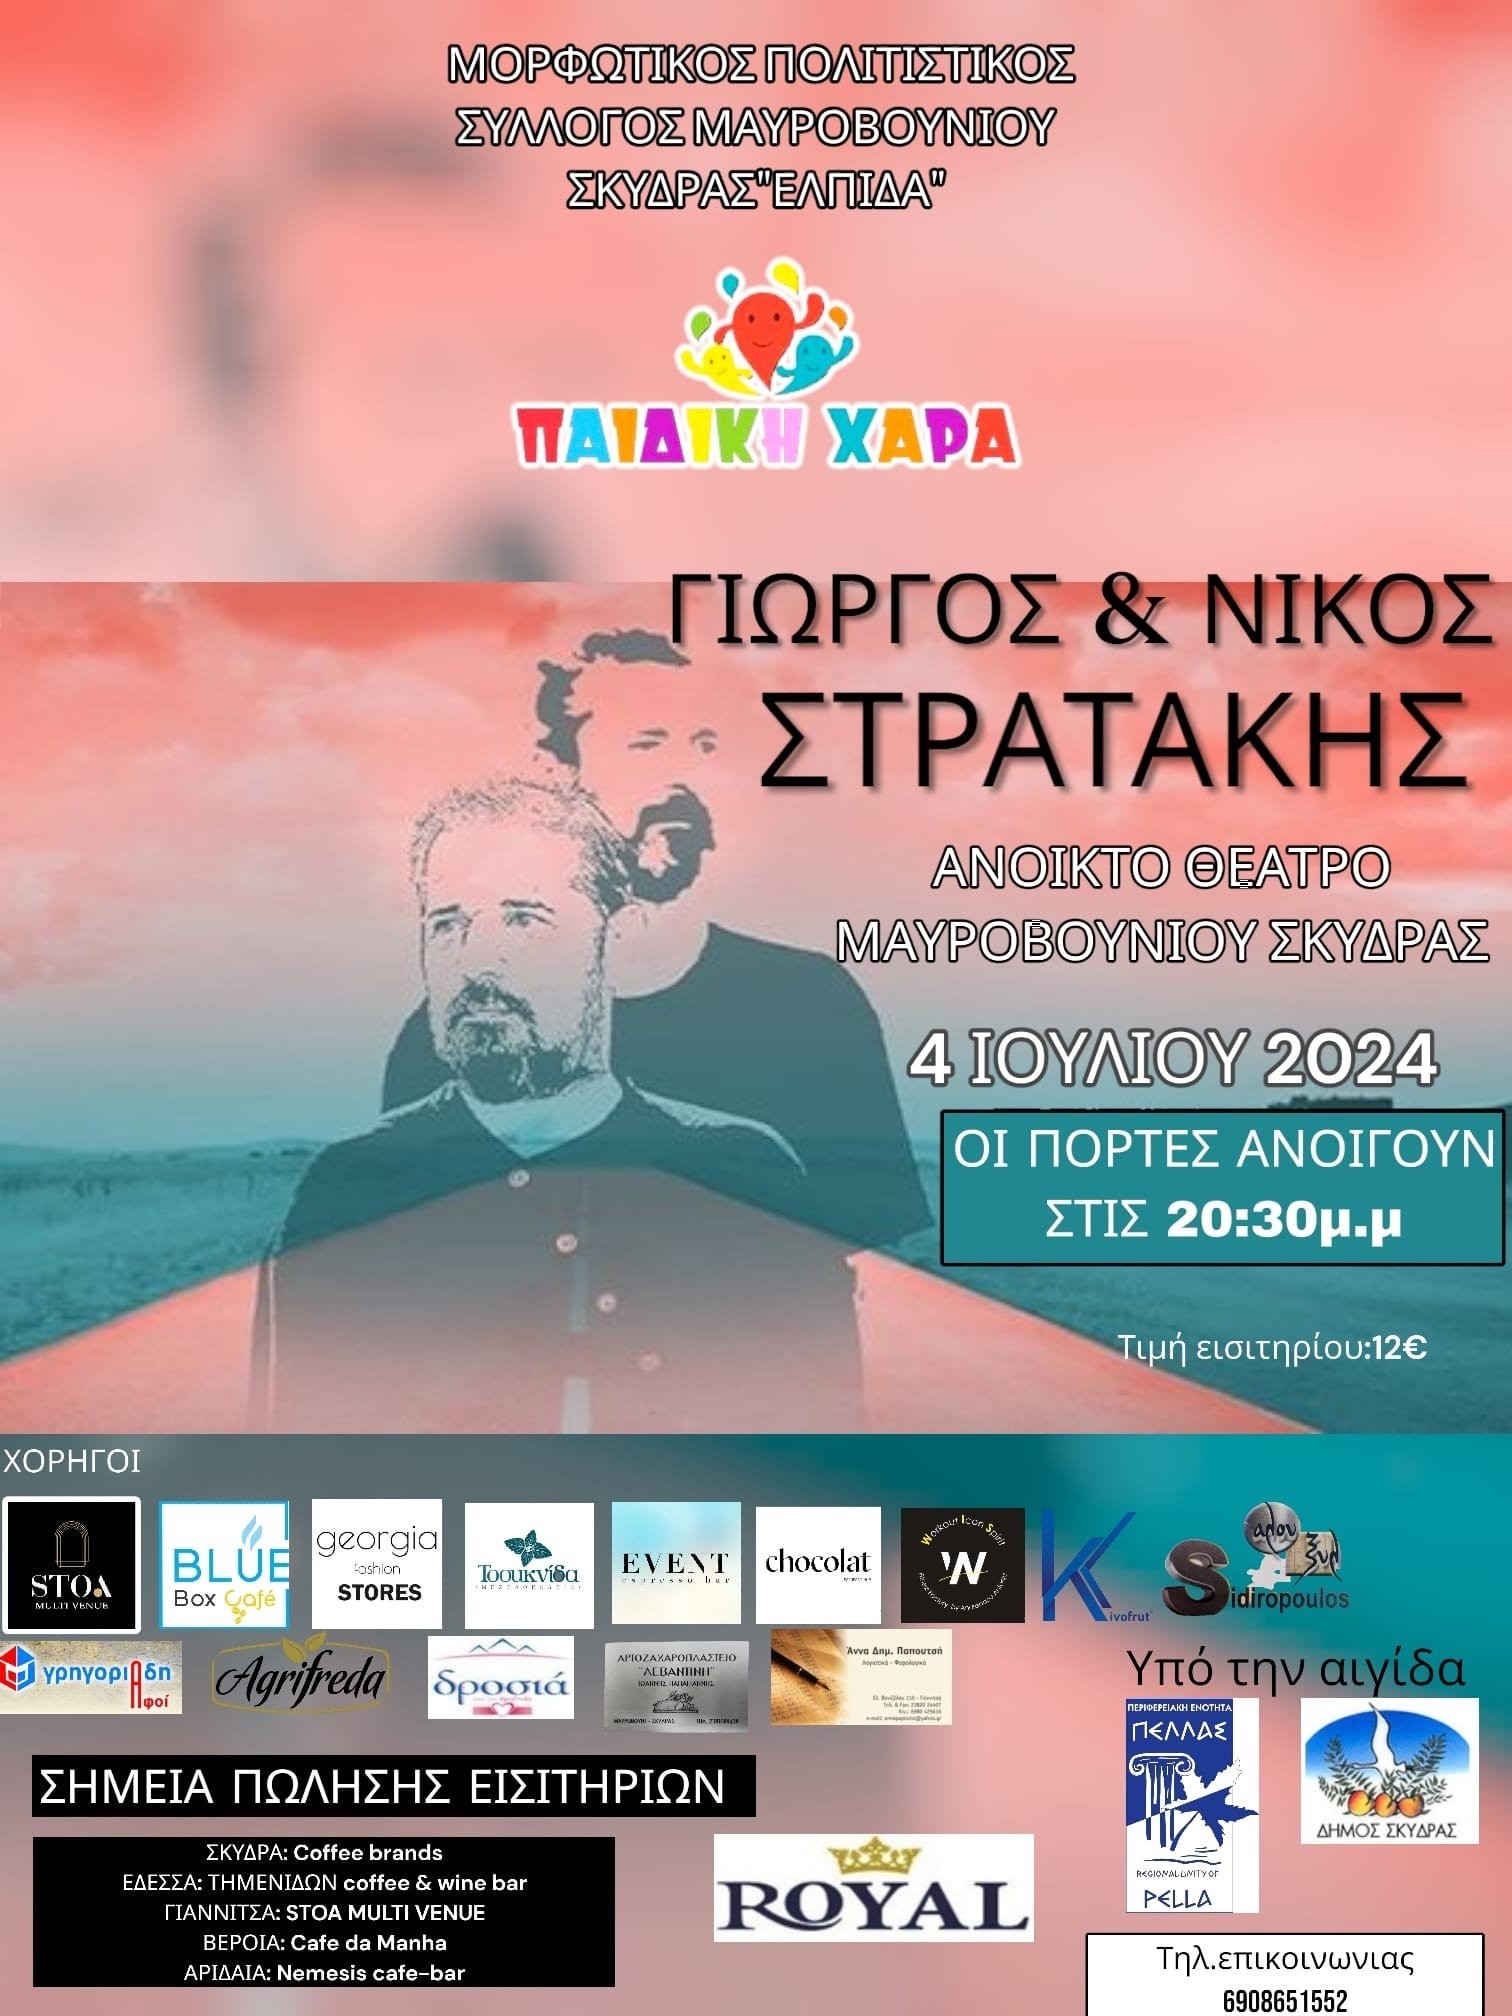 Μουσική εκδήλωση με τους αδερφούς Στρατάκη στο Δημοτικό Θέατρο Μαυροβουνίου Σκύδρας